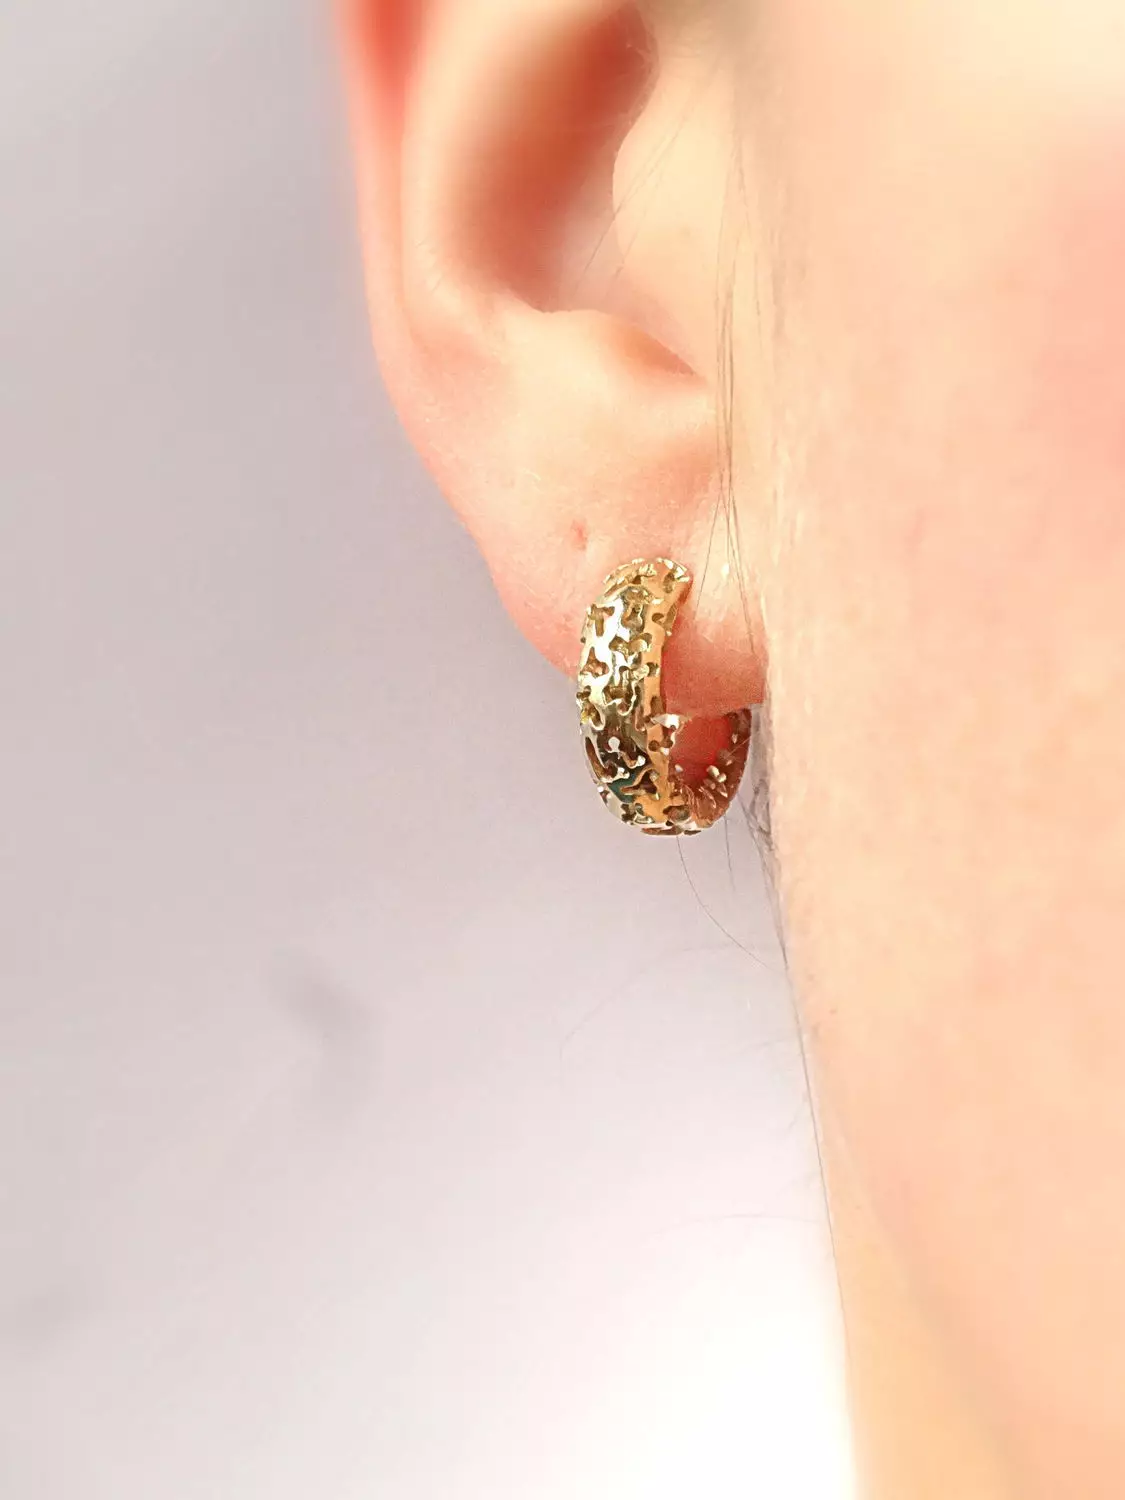 ગોલ્ડ earrings (137 ફોટા): ફેશન earrings 2021 મોતી અને પીળા સોના સાથે સ્ત્રીઓ માટે બિલાડીઓ, રિંગ્સ, પતંગિયા અને નાક સ્વરૂપમાં 3317_133